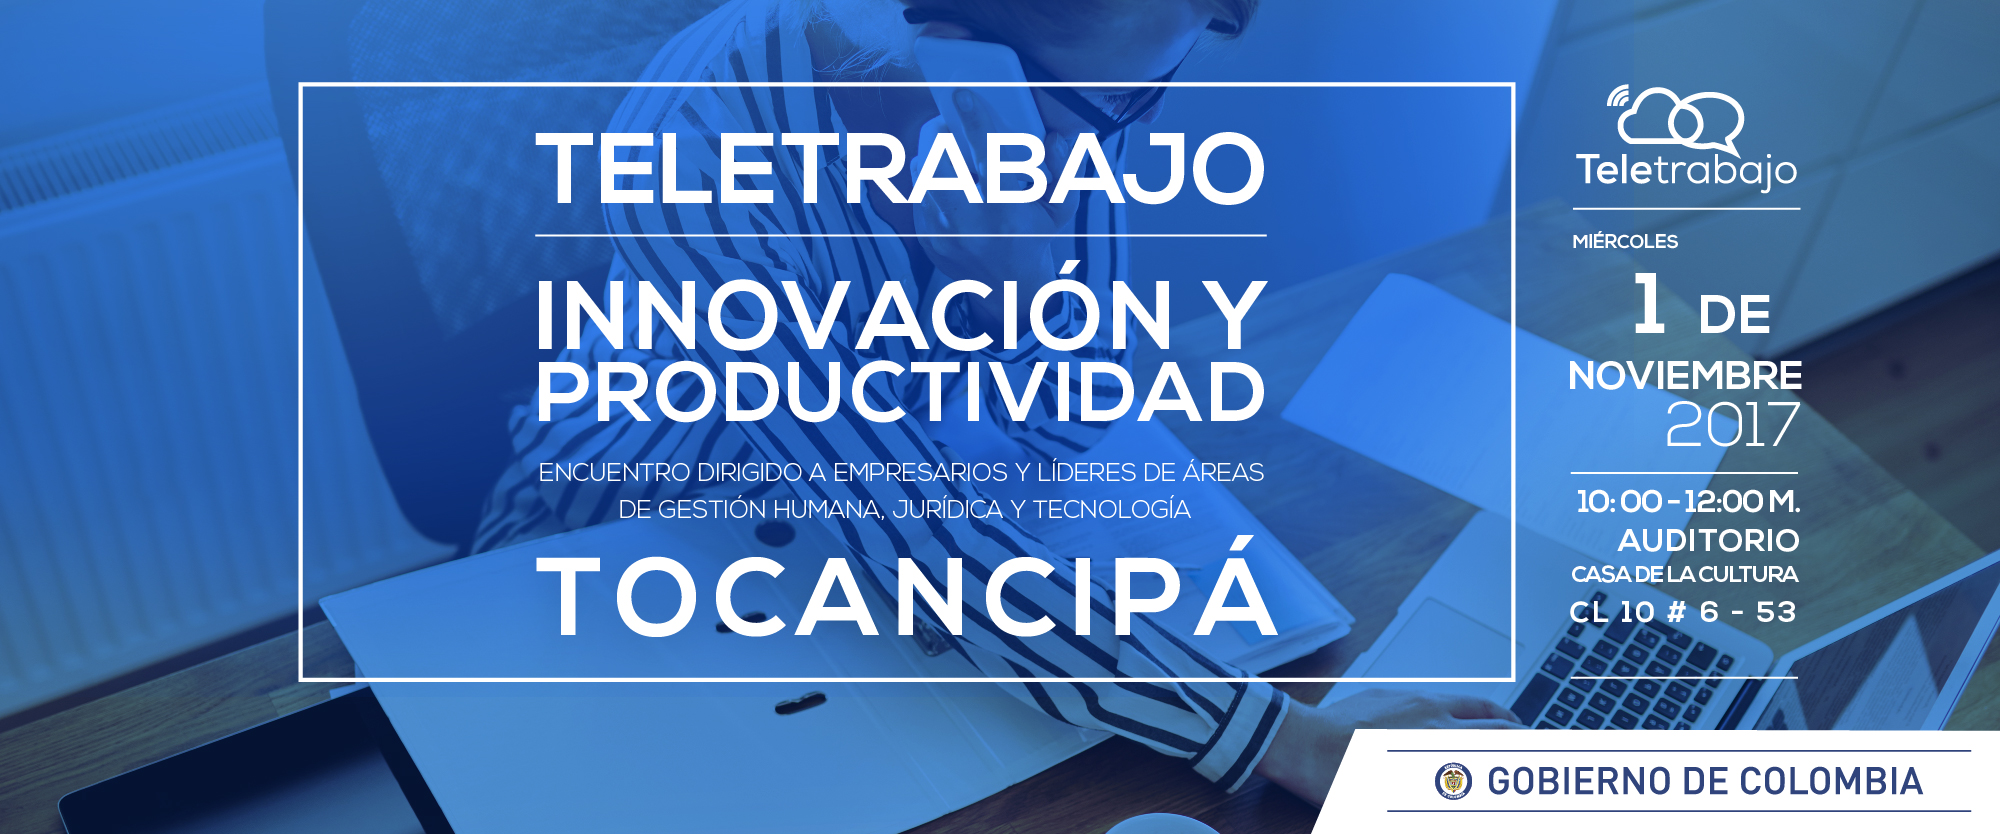 El Teletrabajo regresa a Tocancipá para capacitar a líderes y jefes en innovación y productividad